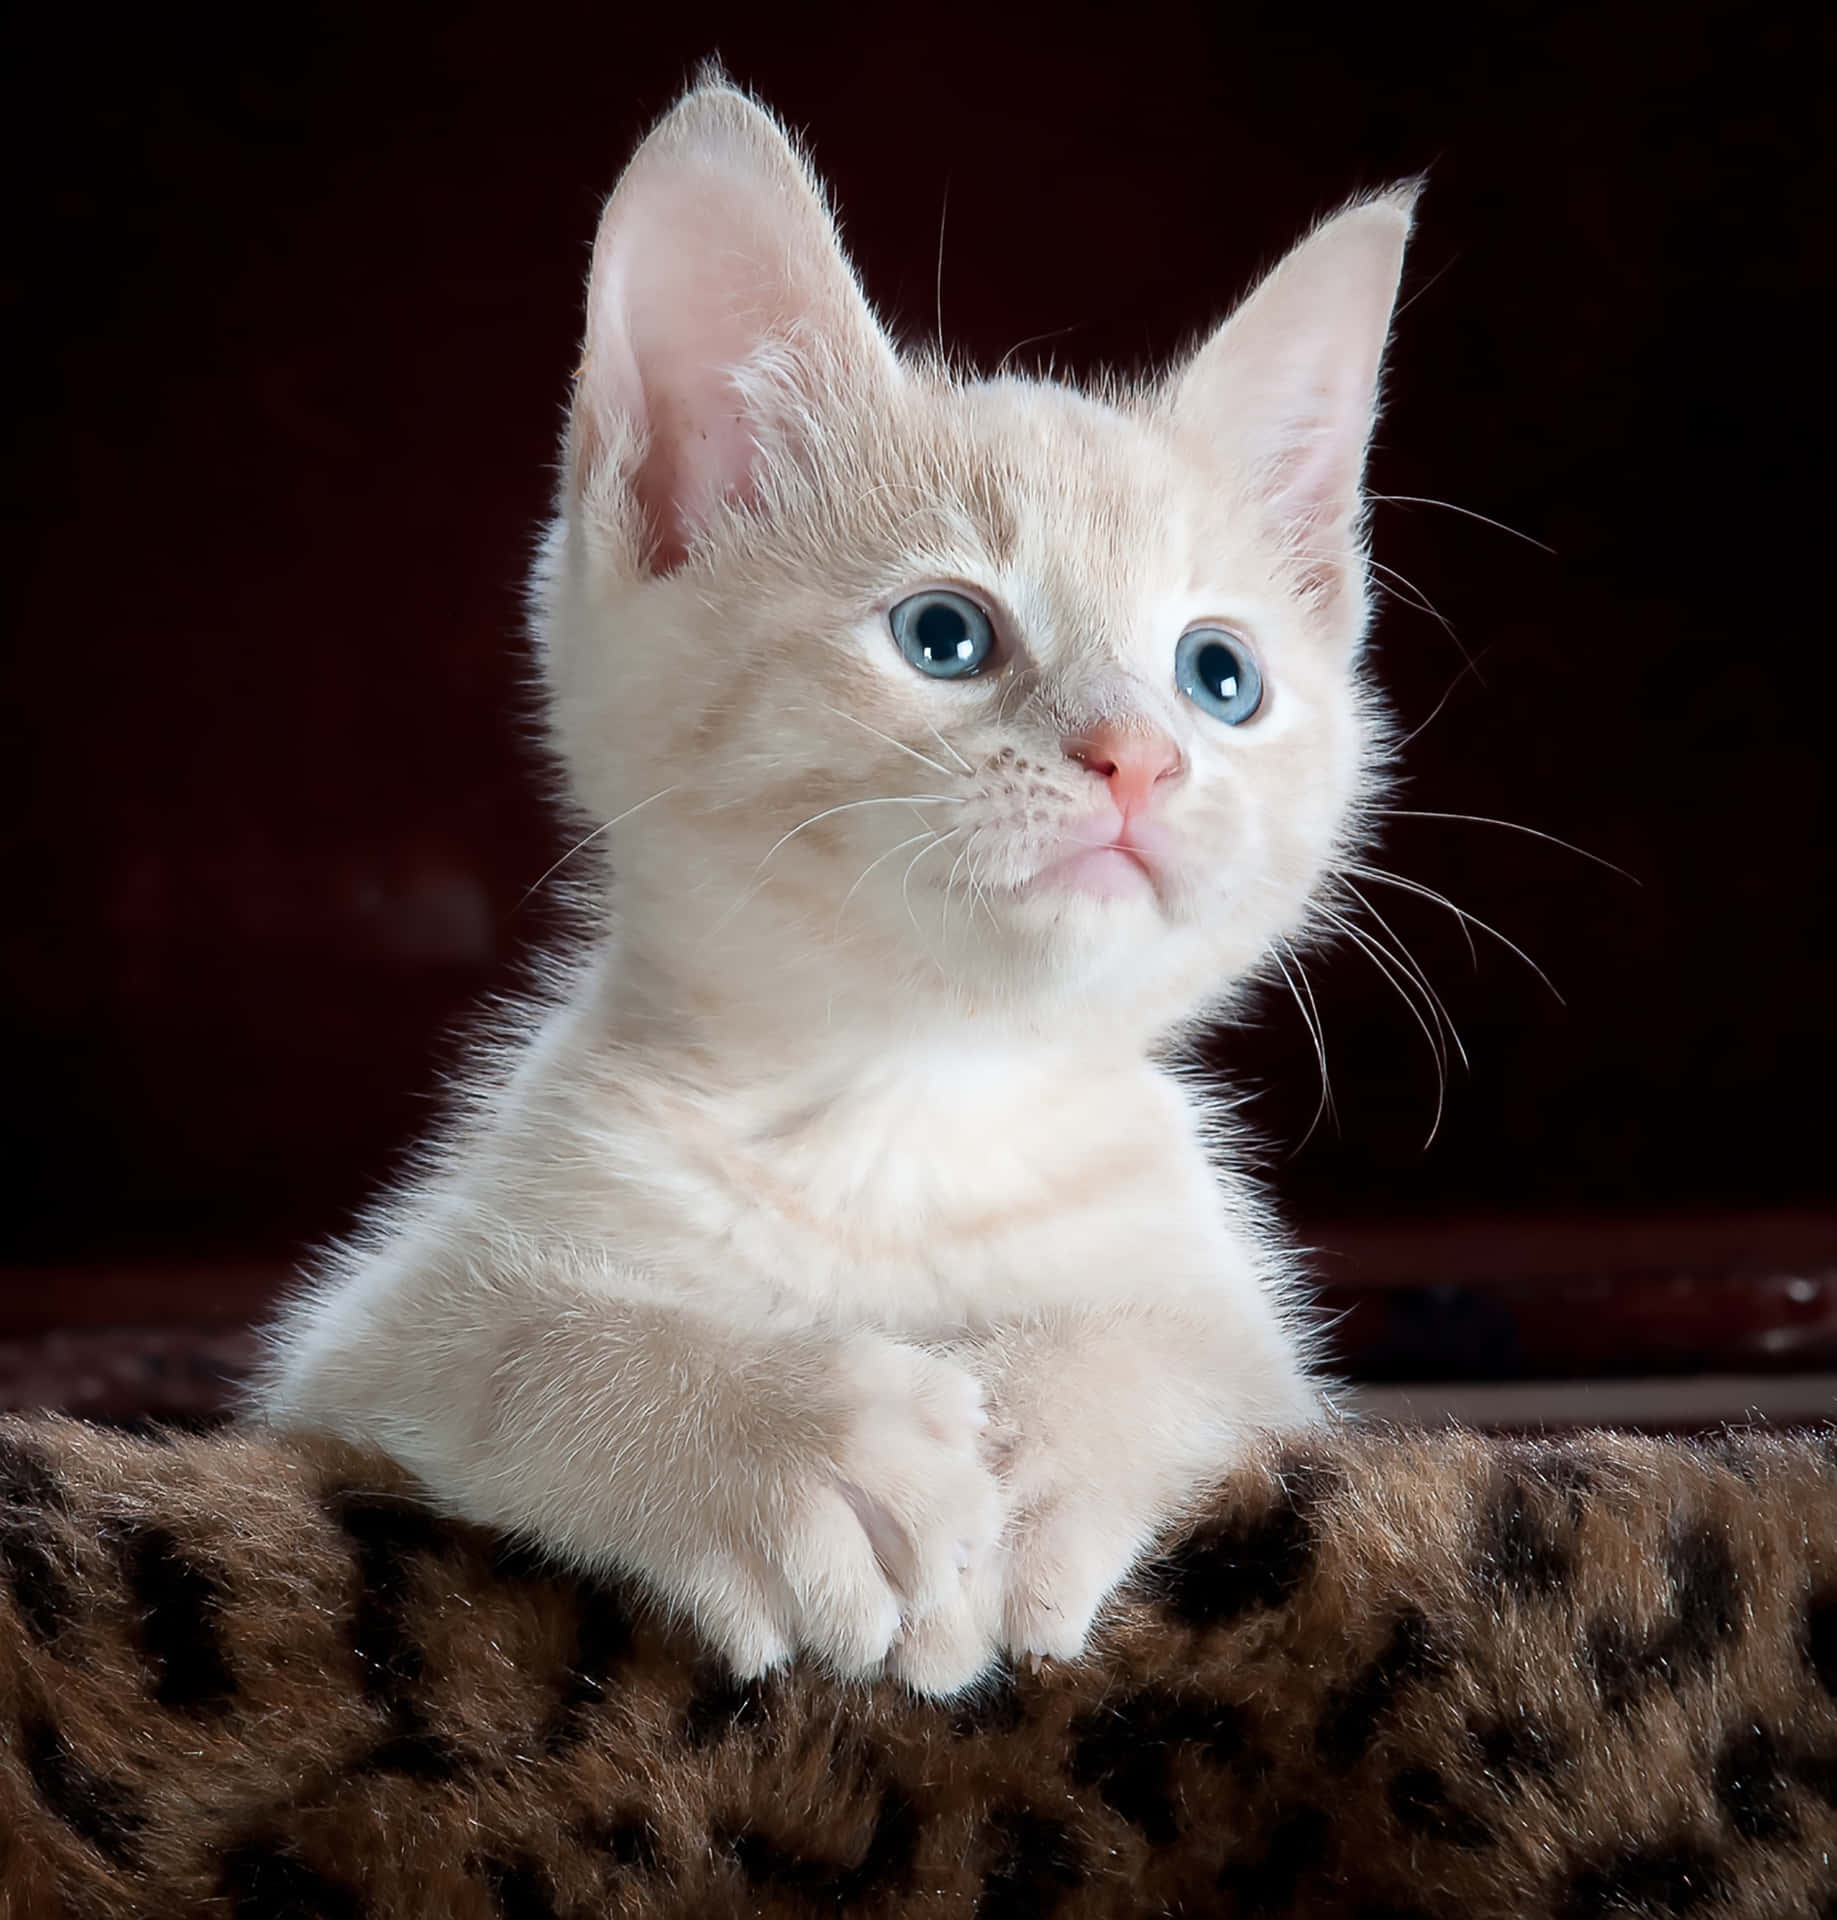 Schauin Meine Augen: Süßes Kätzchen